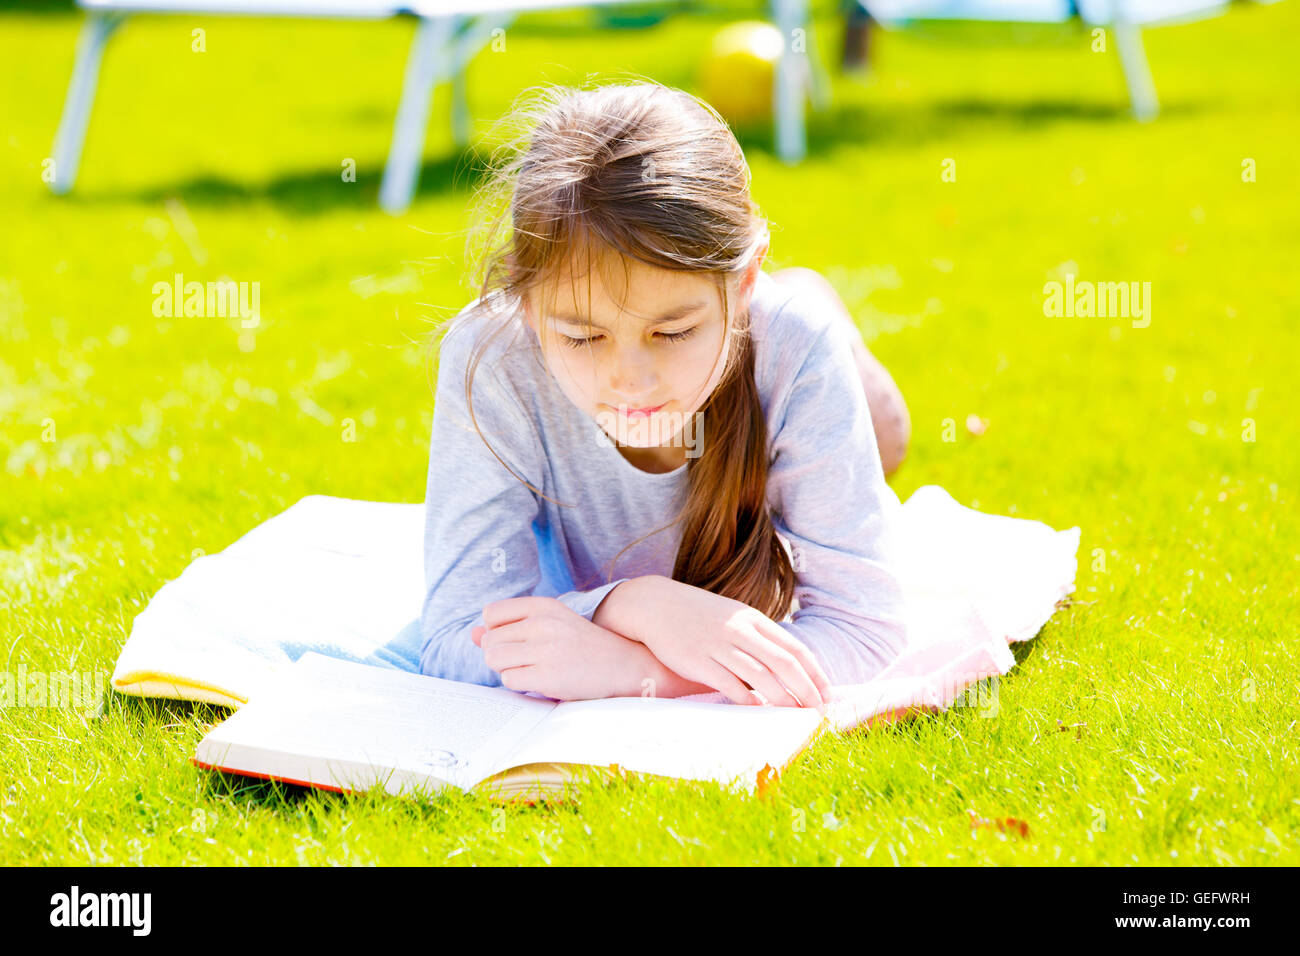 Los niños chica lea el libro sobre el pasto verde Foto de stock